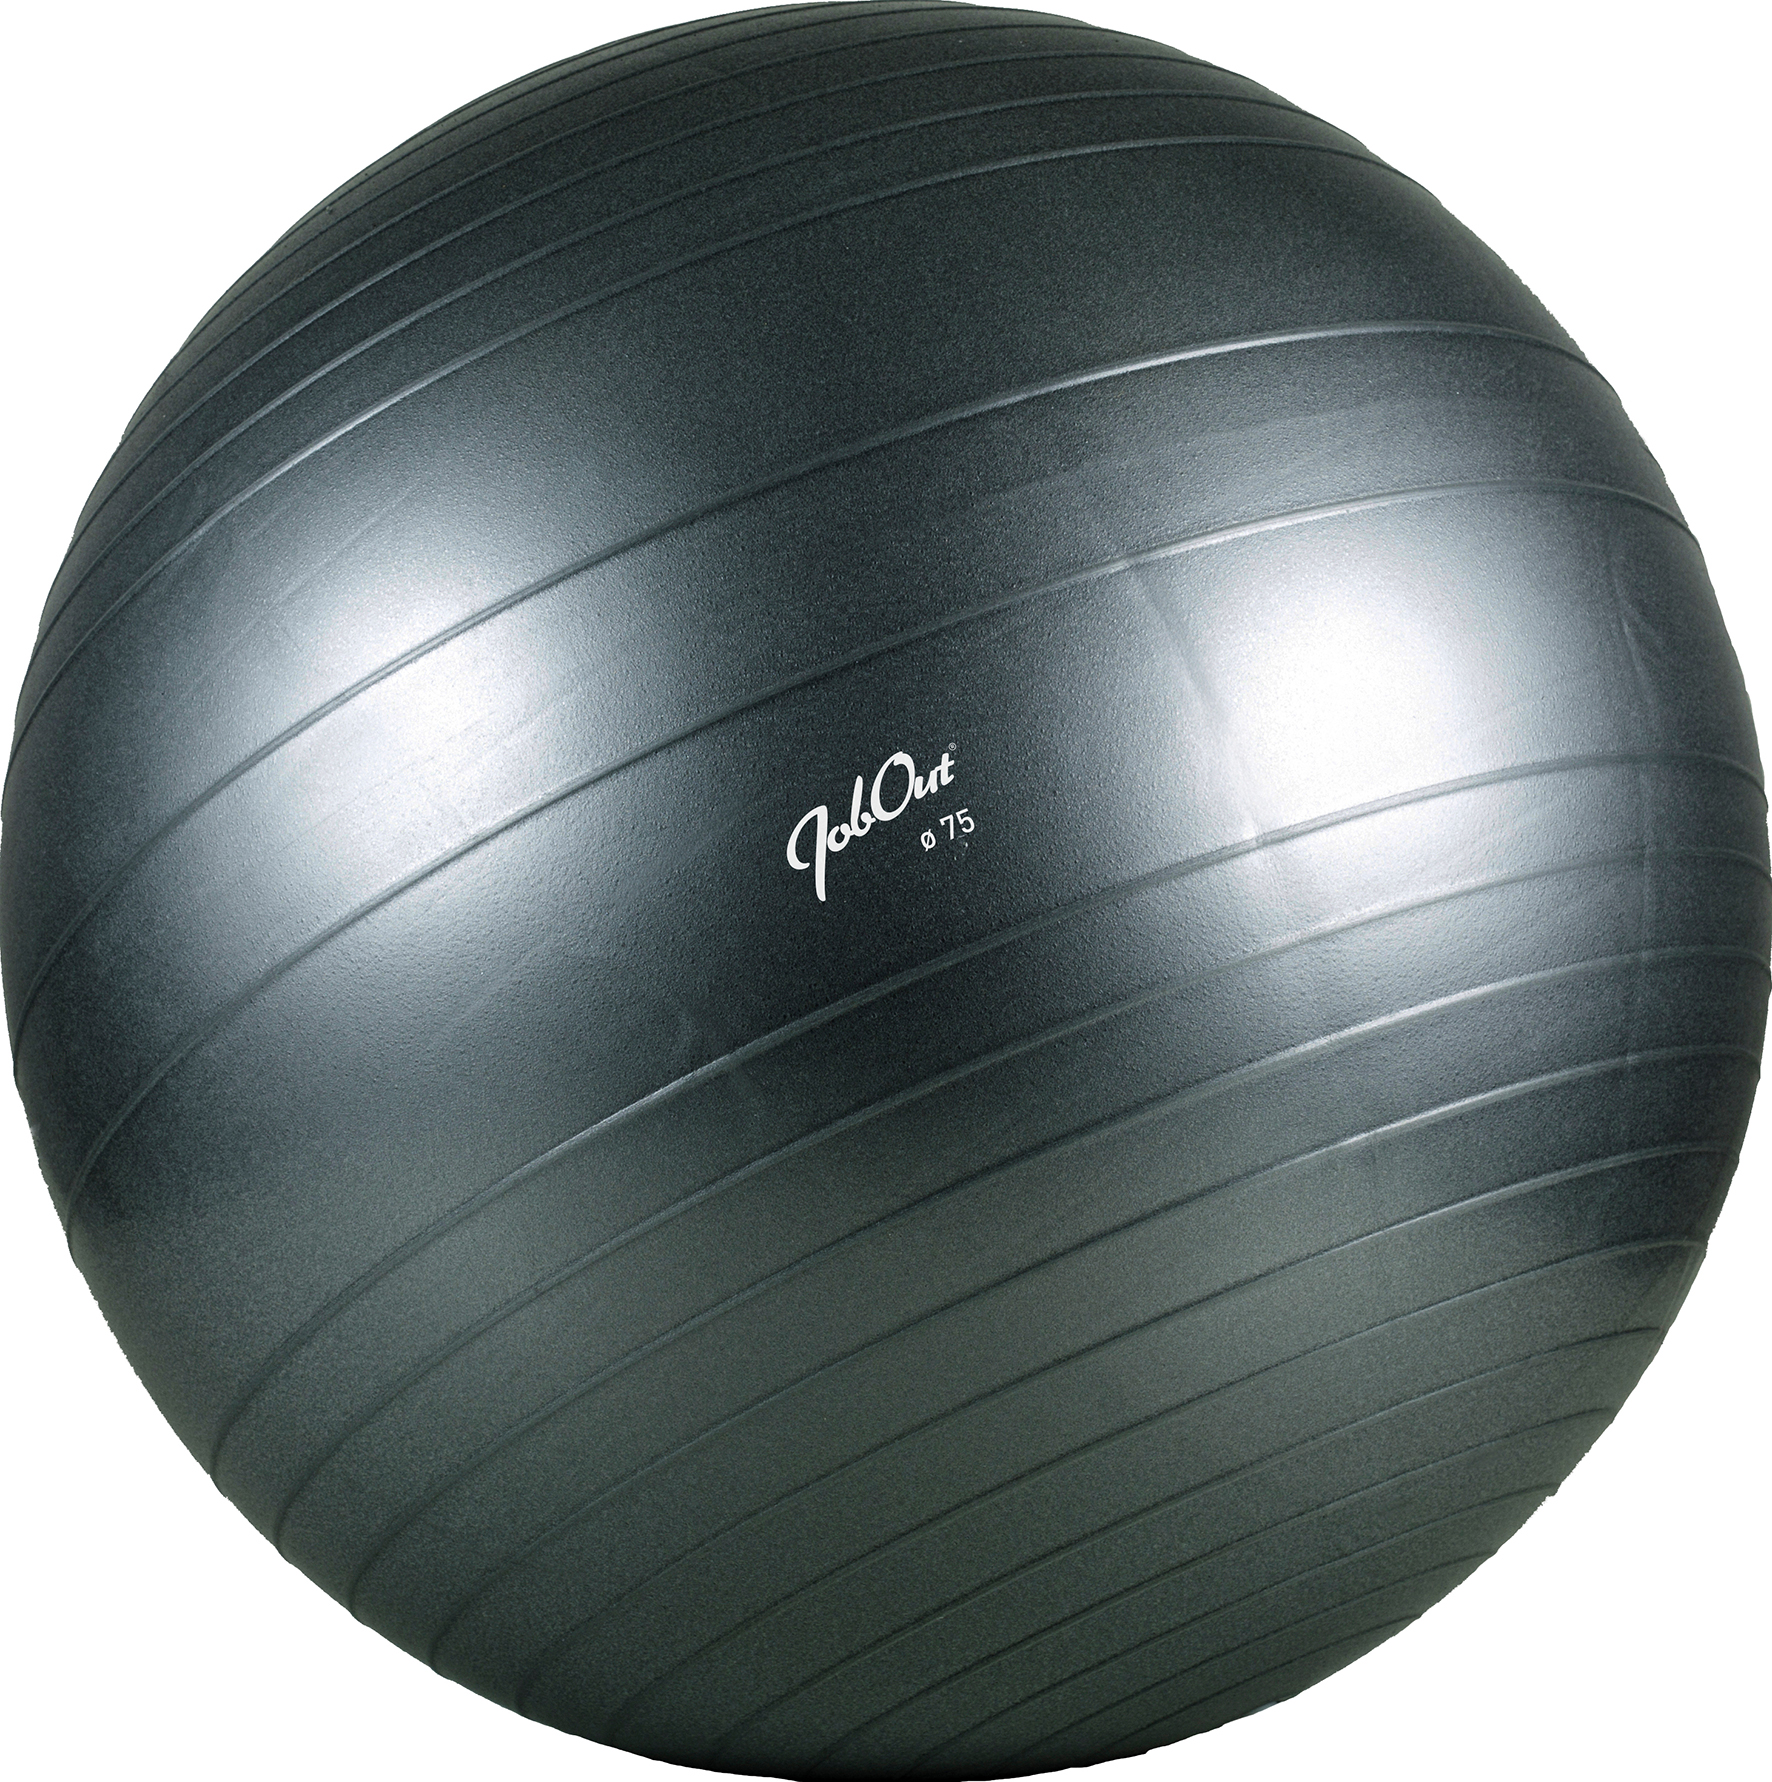 [2470419] JobOut Balance Ball, 75 cm